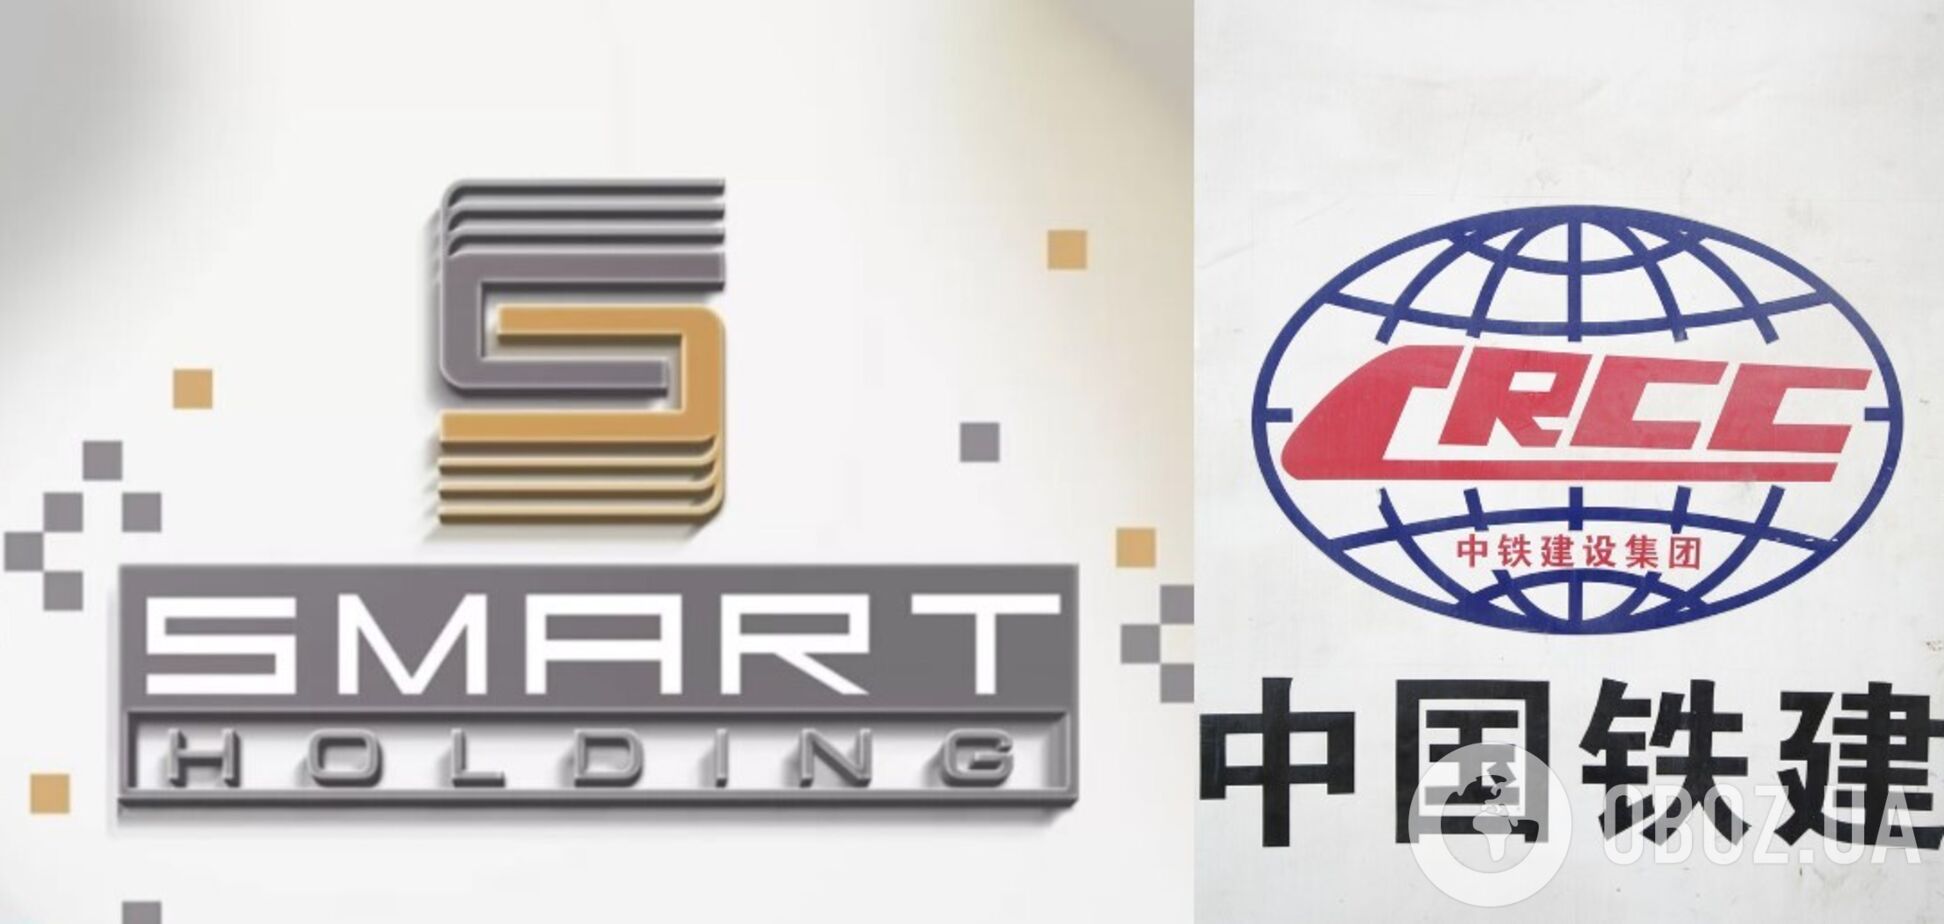 SmartHolding і China Railway Construction CorporationLtd планують співпрацю на базі портових активів